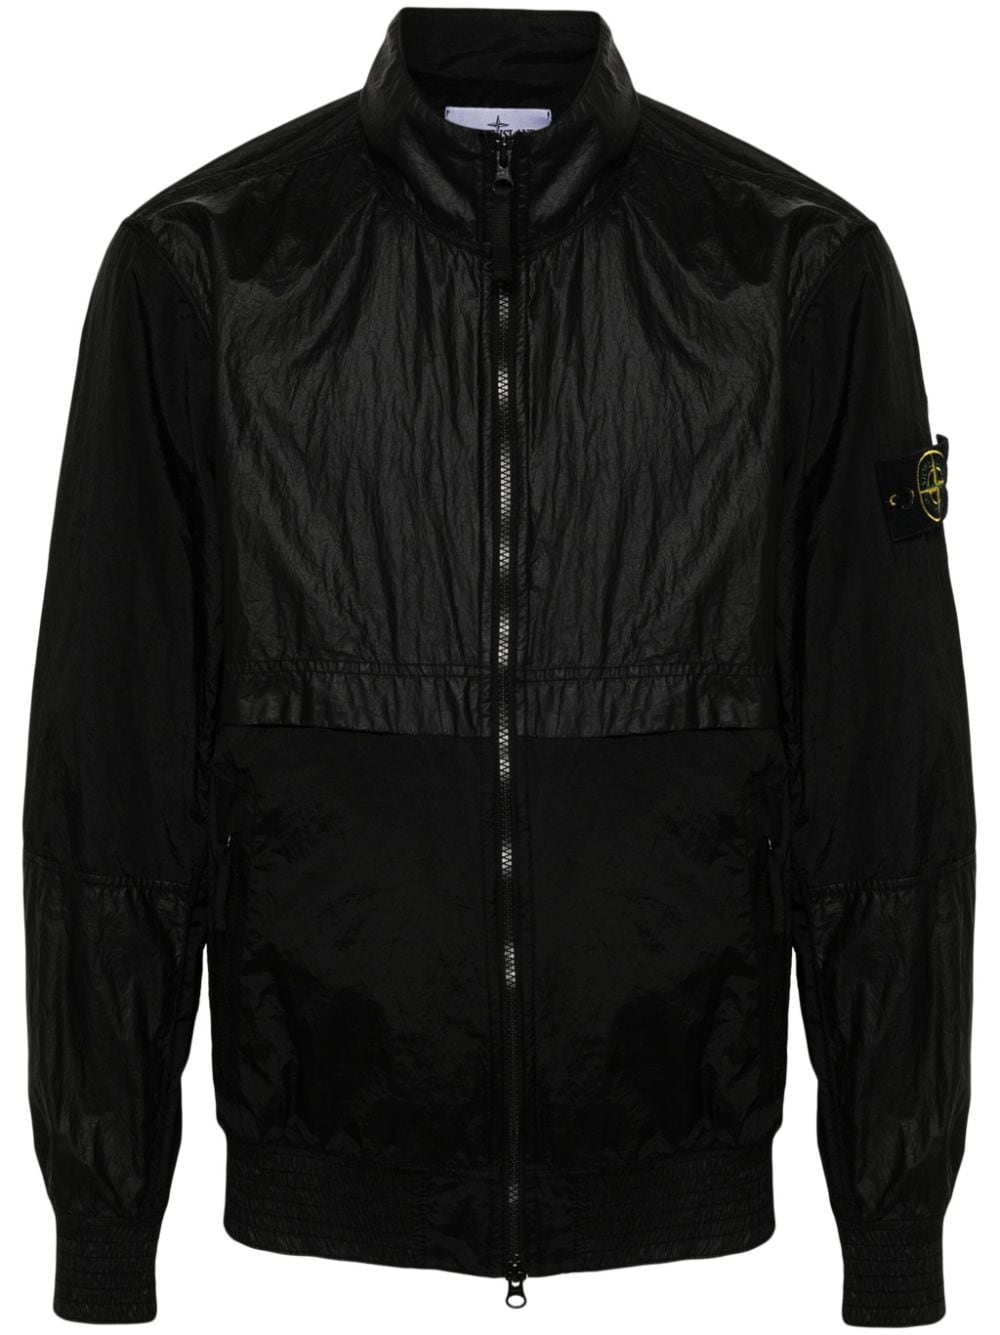 黑色轻质镂空尼龙夹克带立领和特色可拆卸指南针徽章